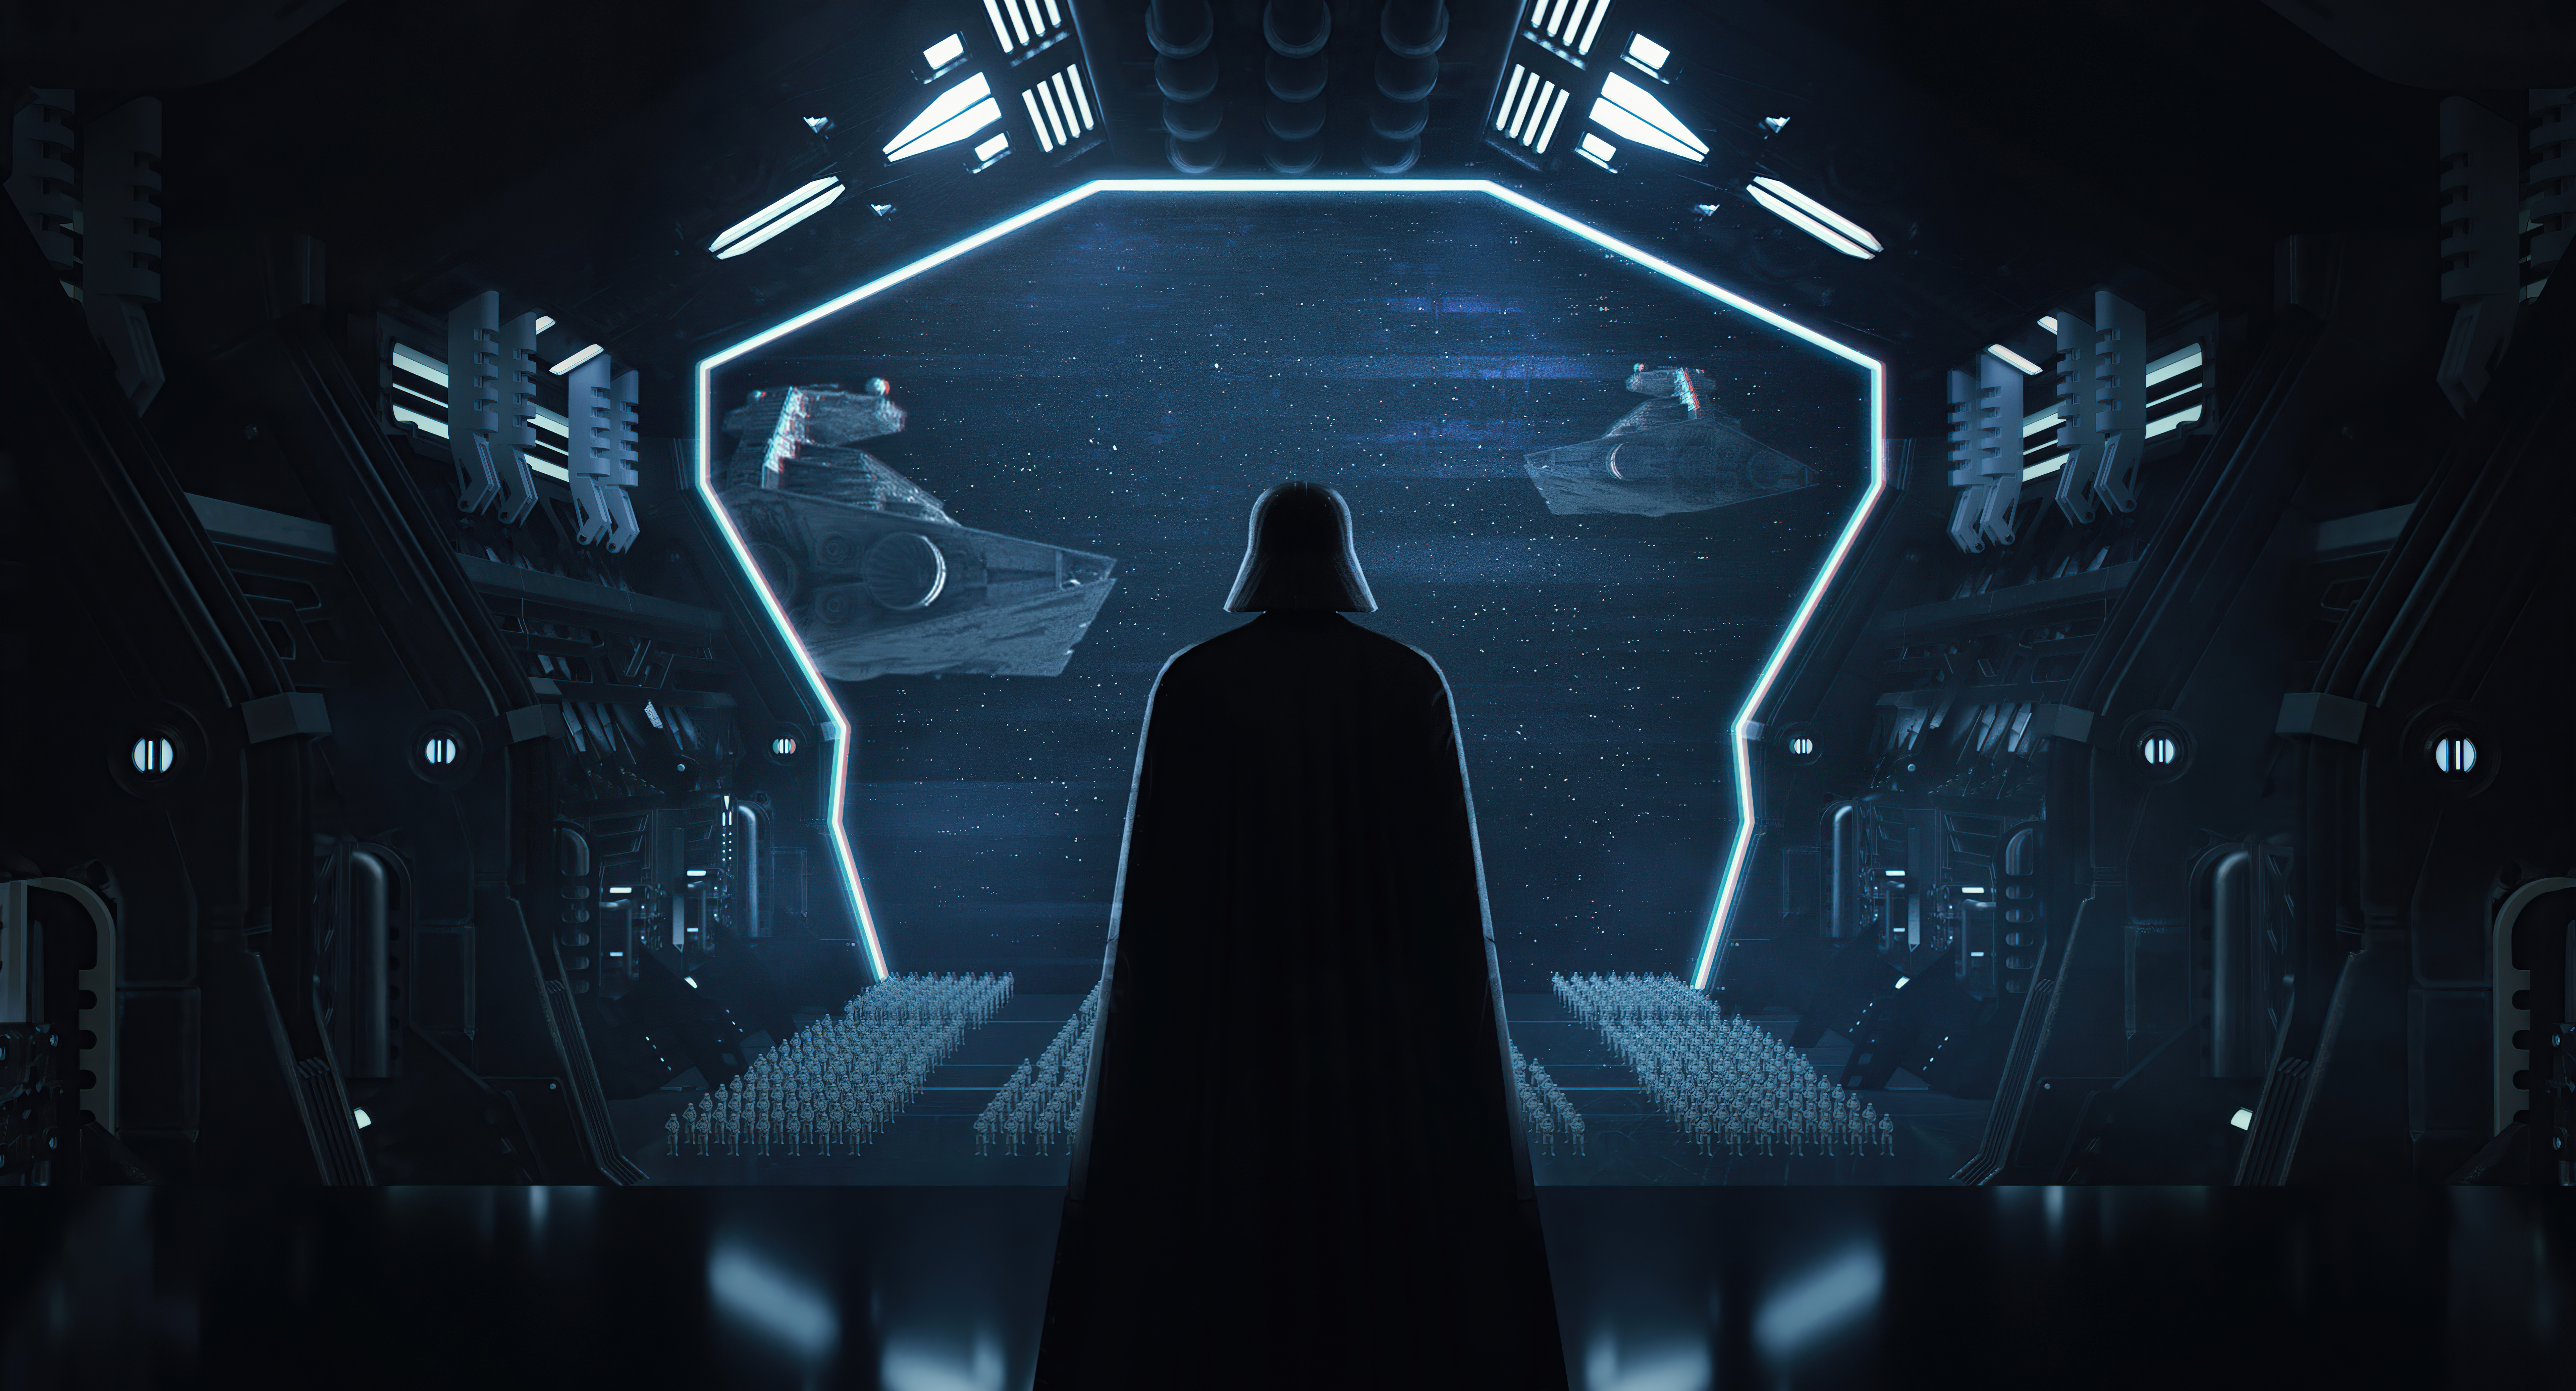 Sci Fi Star Wars 4k Ultra HD Wallpaper by Mizuri